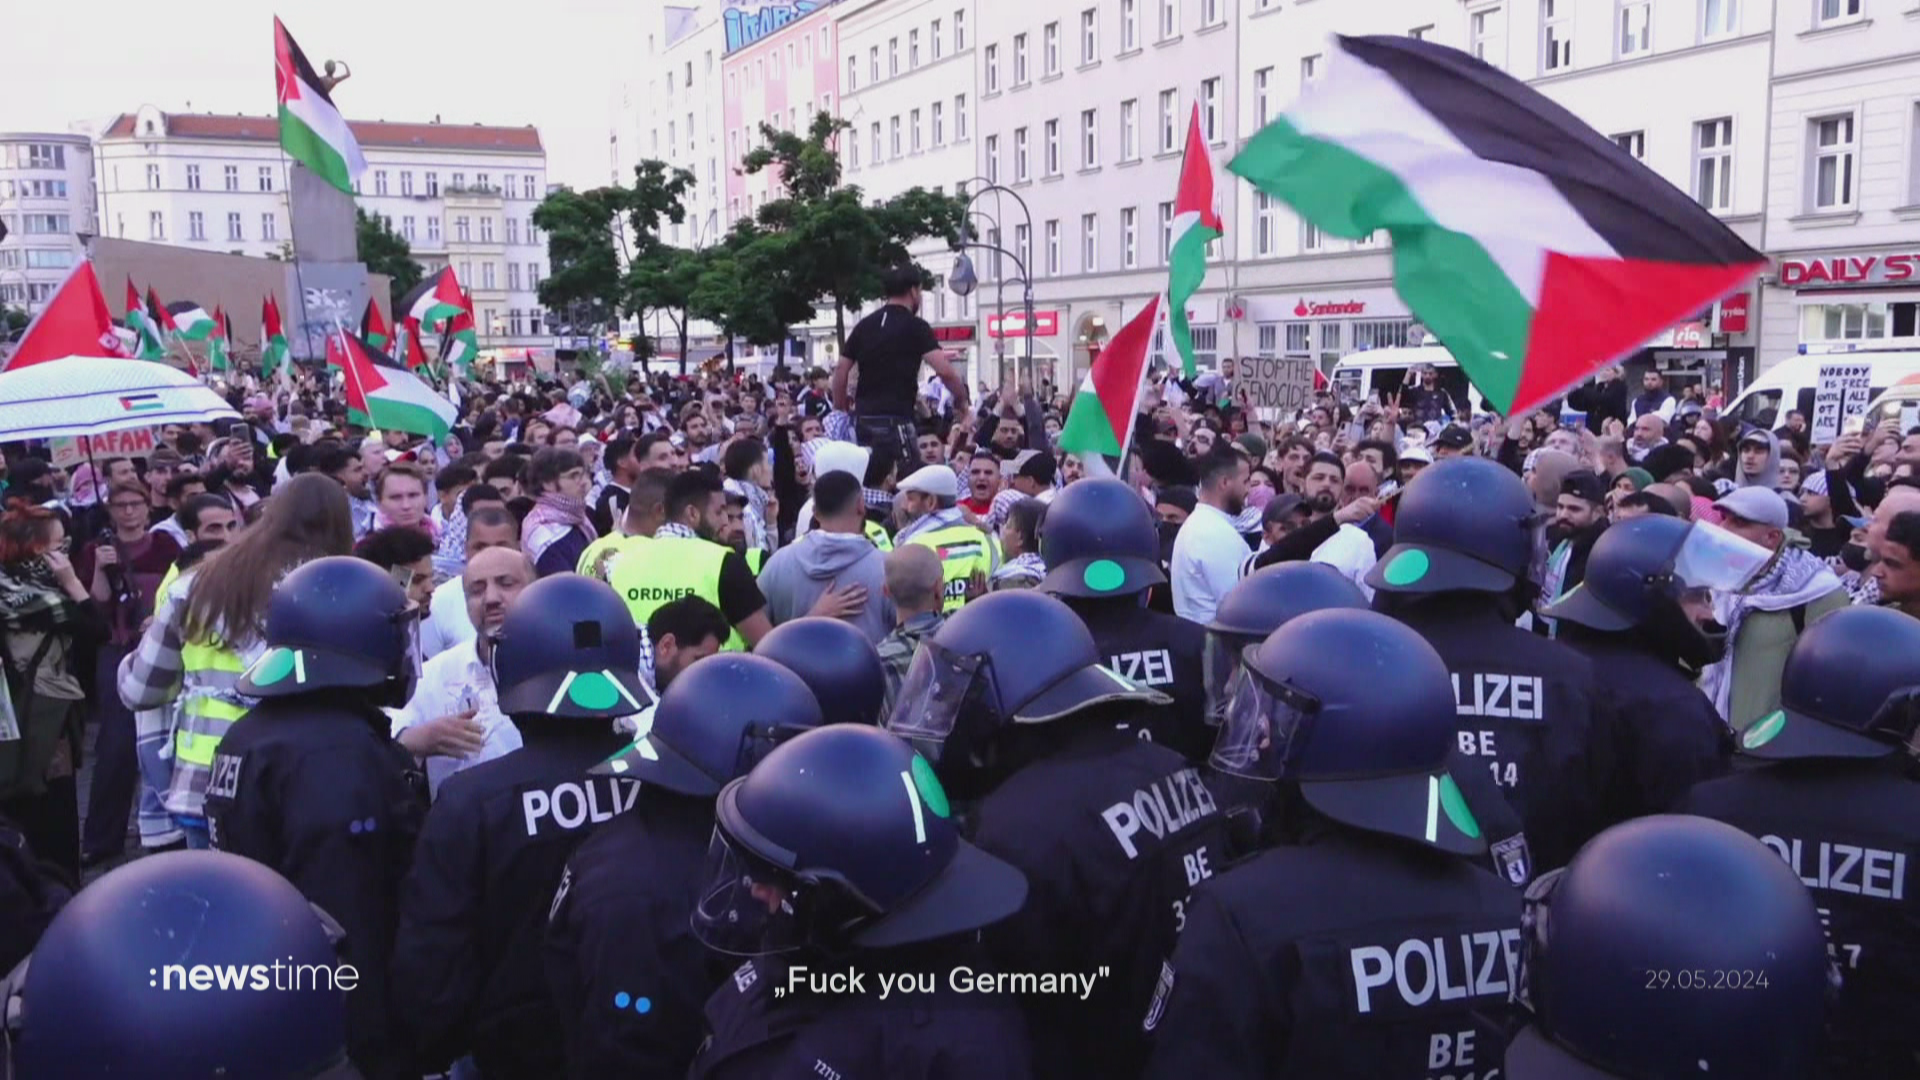 "Berlin soll brennen": Ausschreitungen bei Pro-Palästina-Demo in der Hauptstadt